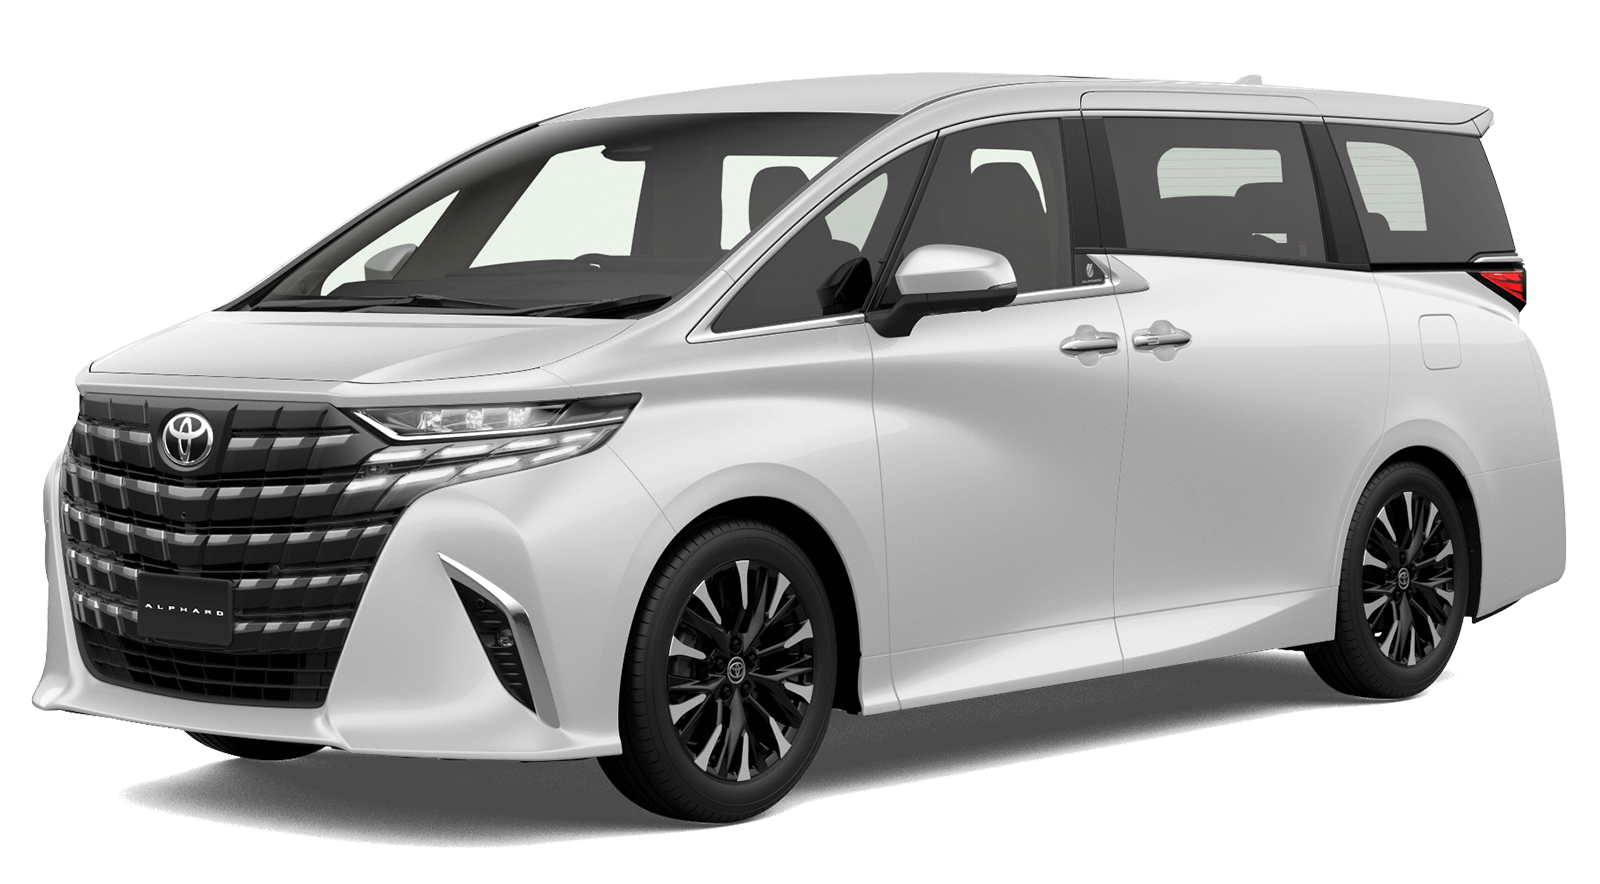 Toyota Hùng Vương – Chi Nhánh Tân Tạo tung gói ưu đãi bán hàng, dịch vụ tri ân khách hàng trong tháng 10.2021